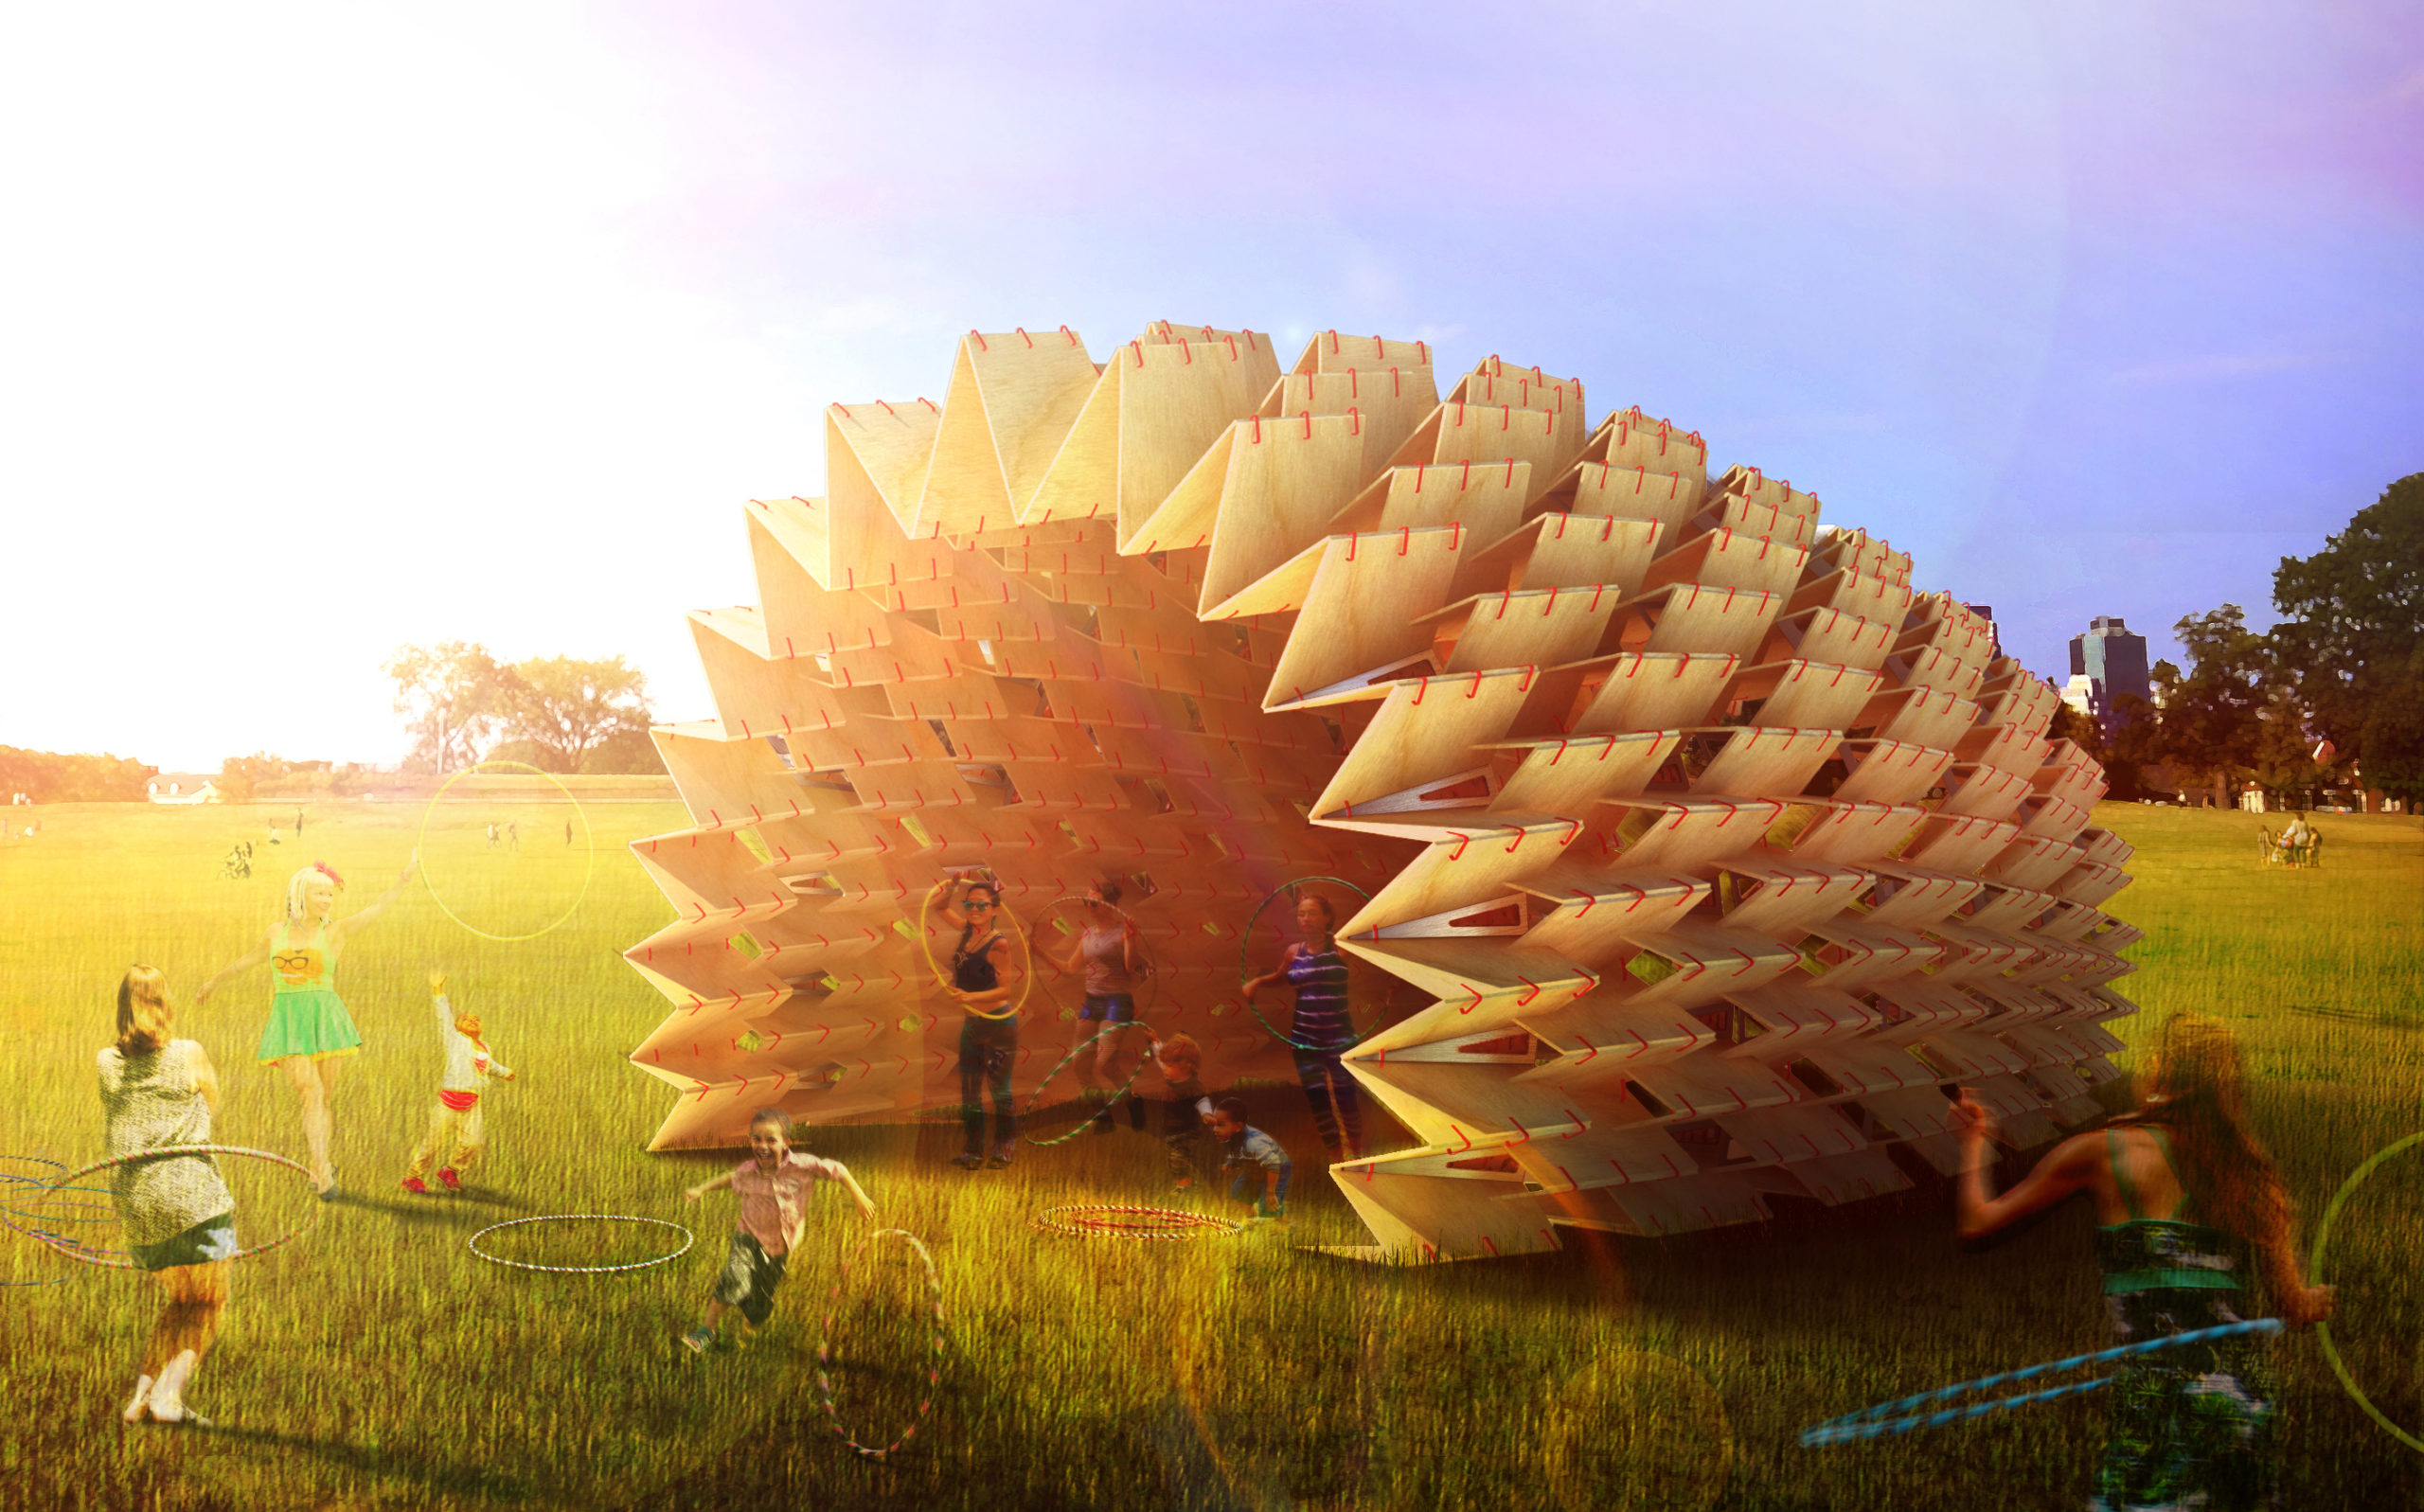 Seed Cone Pavilion by DFA. Image: DFA.